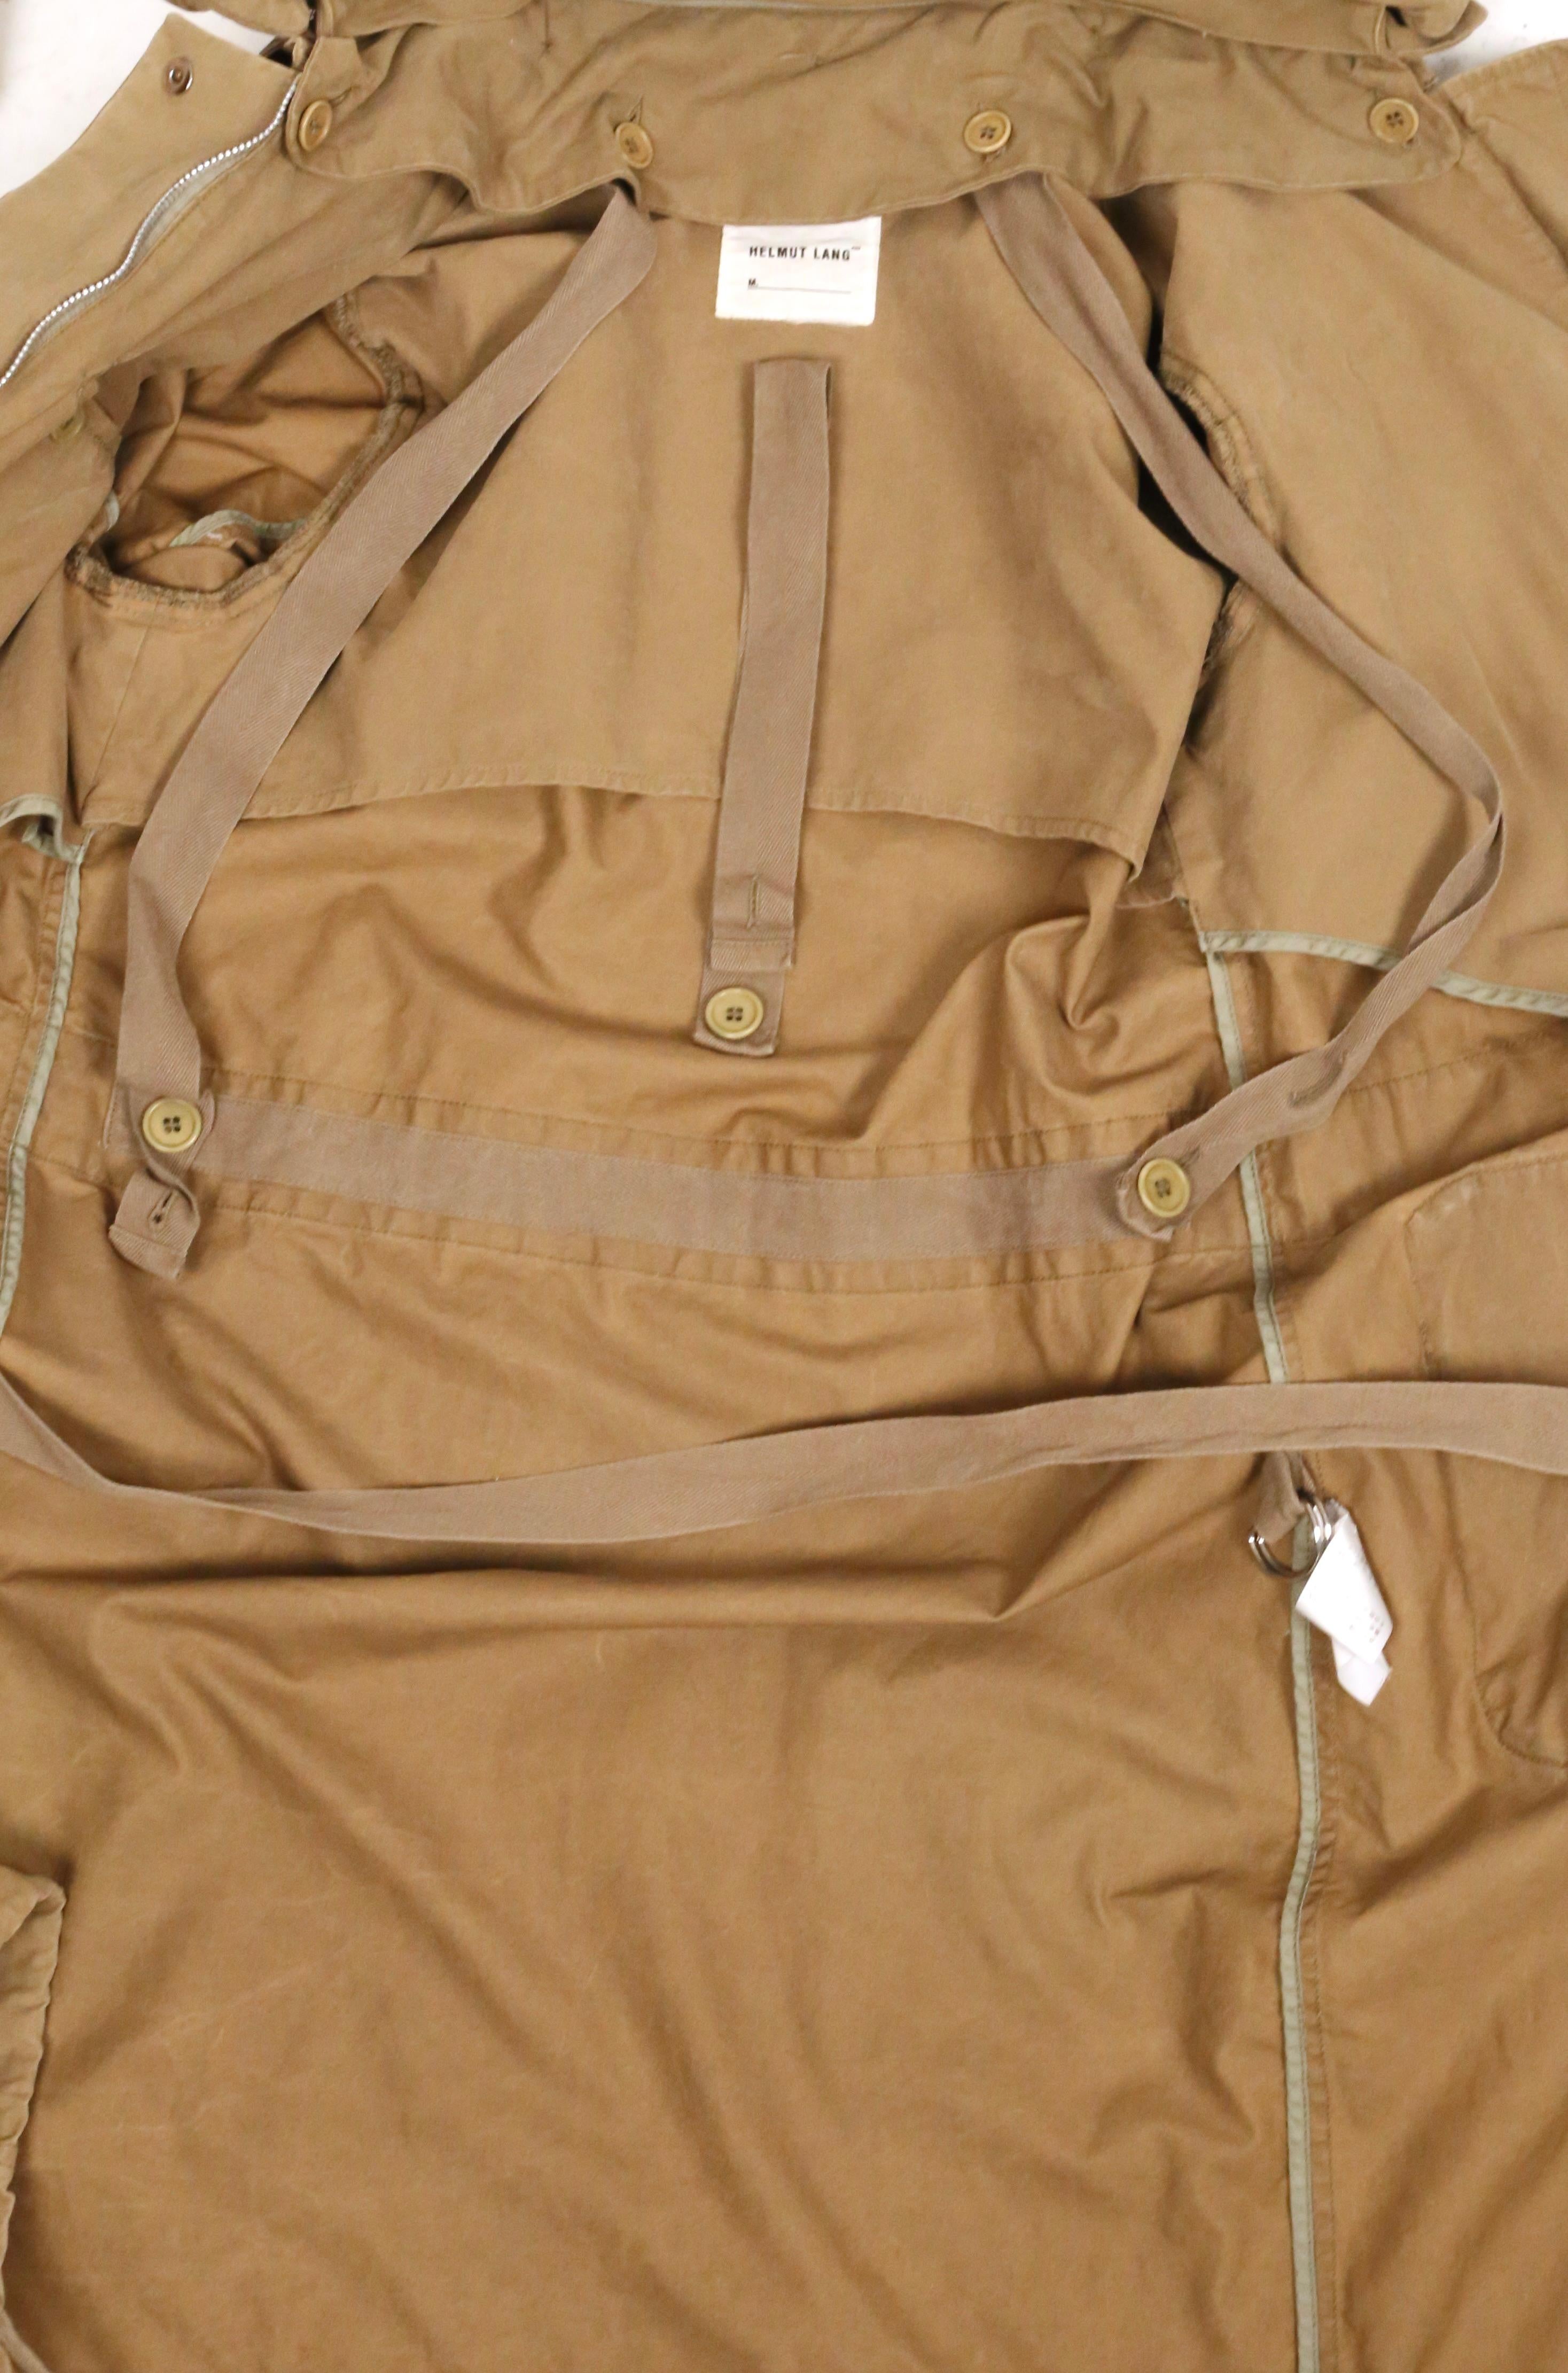 1999 HELMUT LANG vintage parka coat with padded collar & bondage straps  For Sale 11